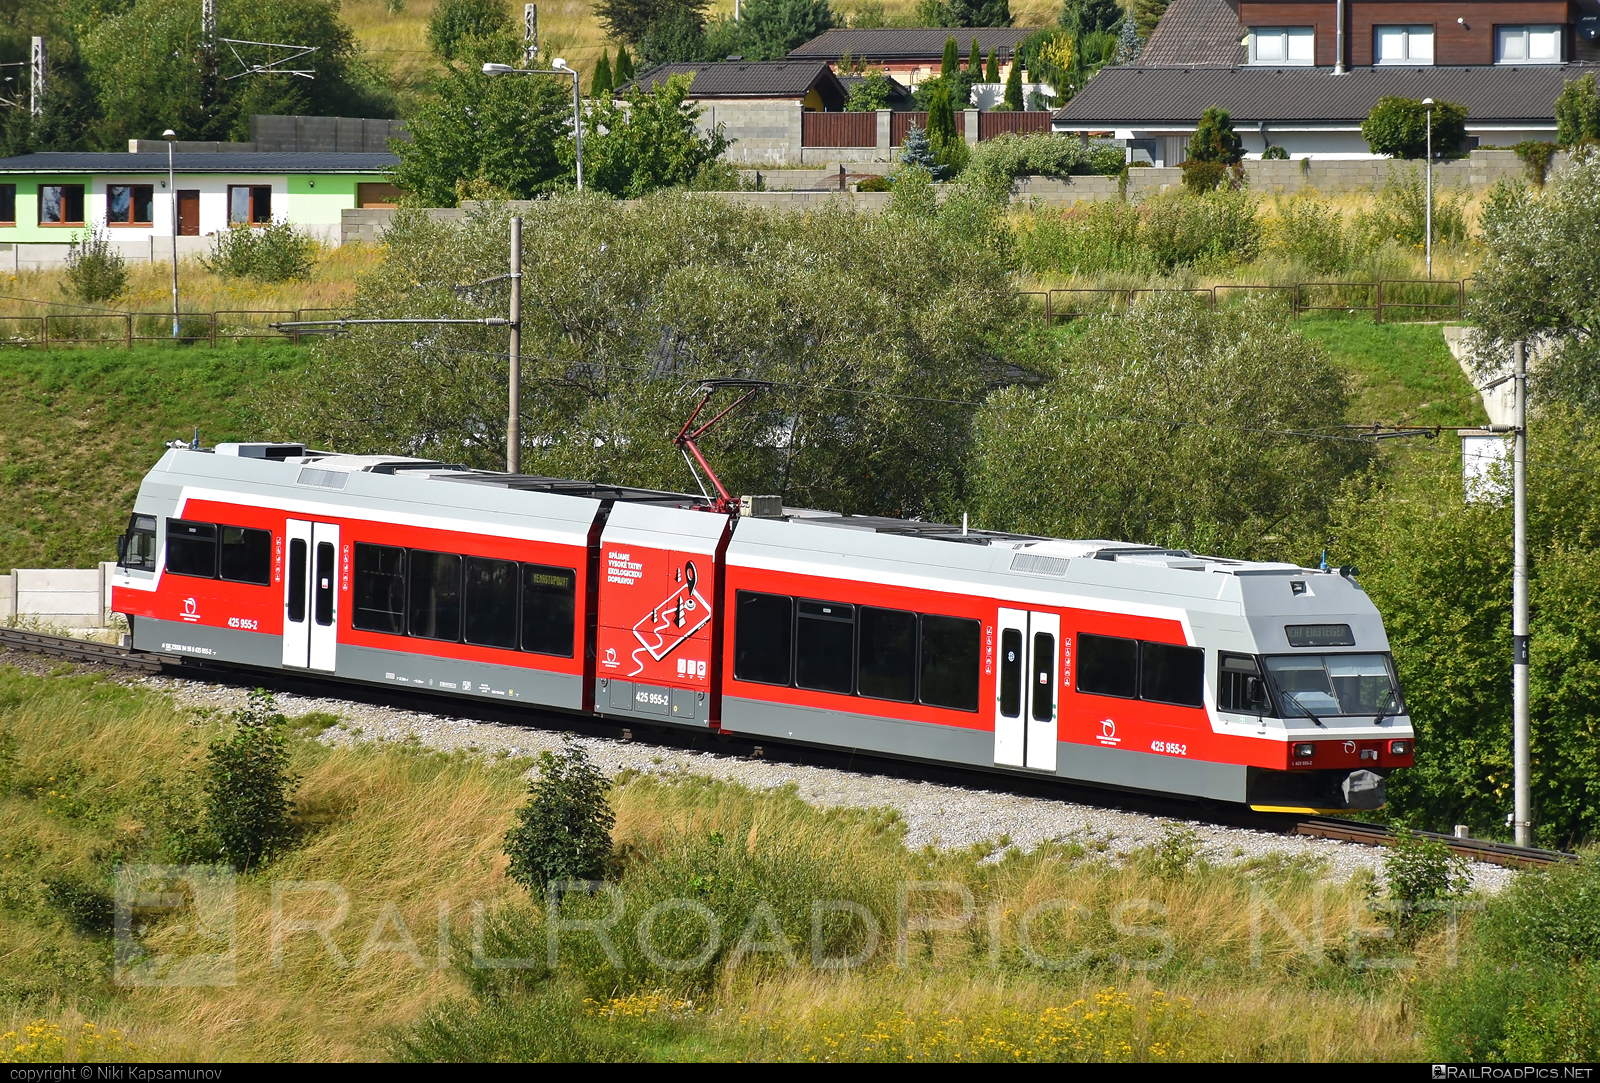 GTW Vysoké Tatry Class 425.95 - 425 955-2 operated by Železničná Spoločnost' Slovensko, a.s. #ZeleznicnaSpolocnostSlovensko #gtw26 #gtwvysoketatry #narrowgauge #tetrapack #tez #zssk #zssk425 #zssk42595